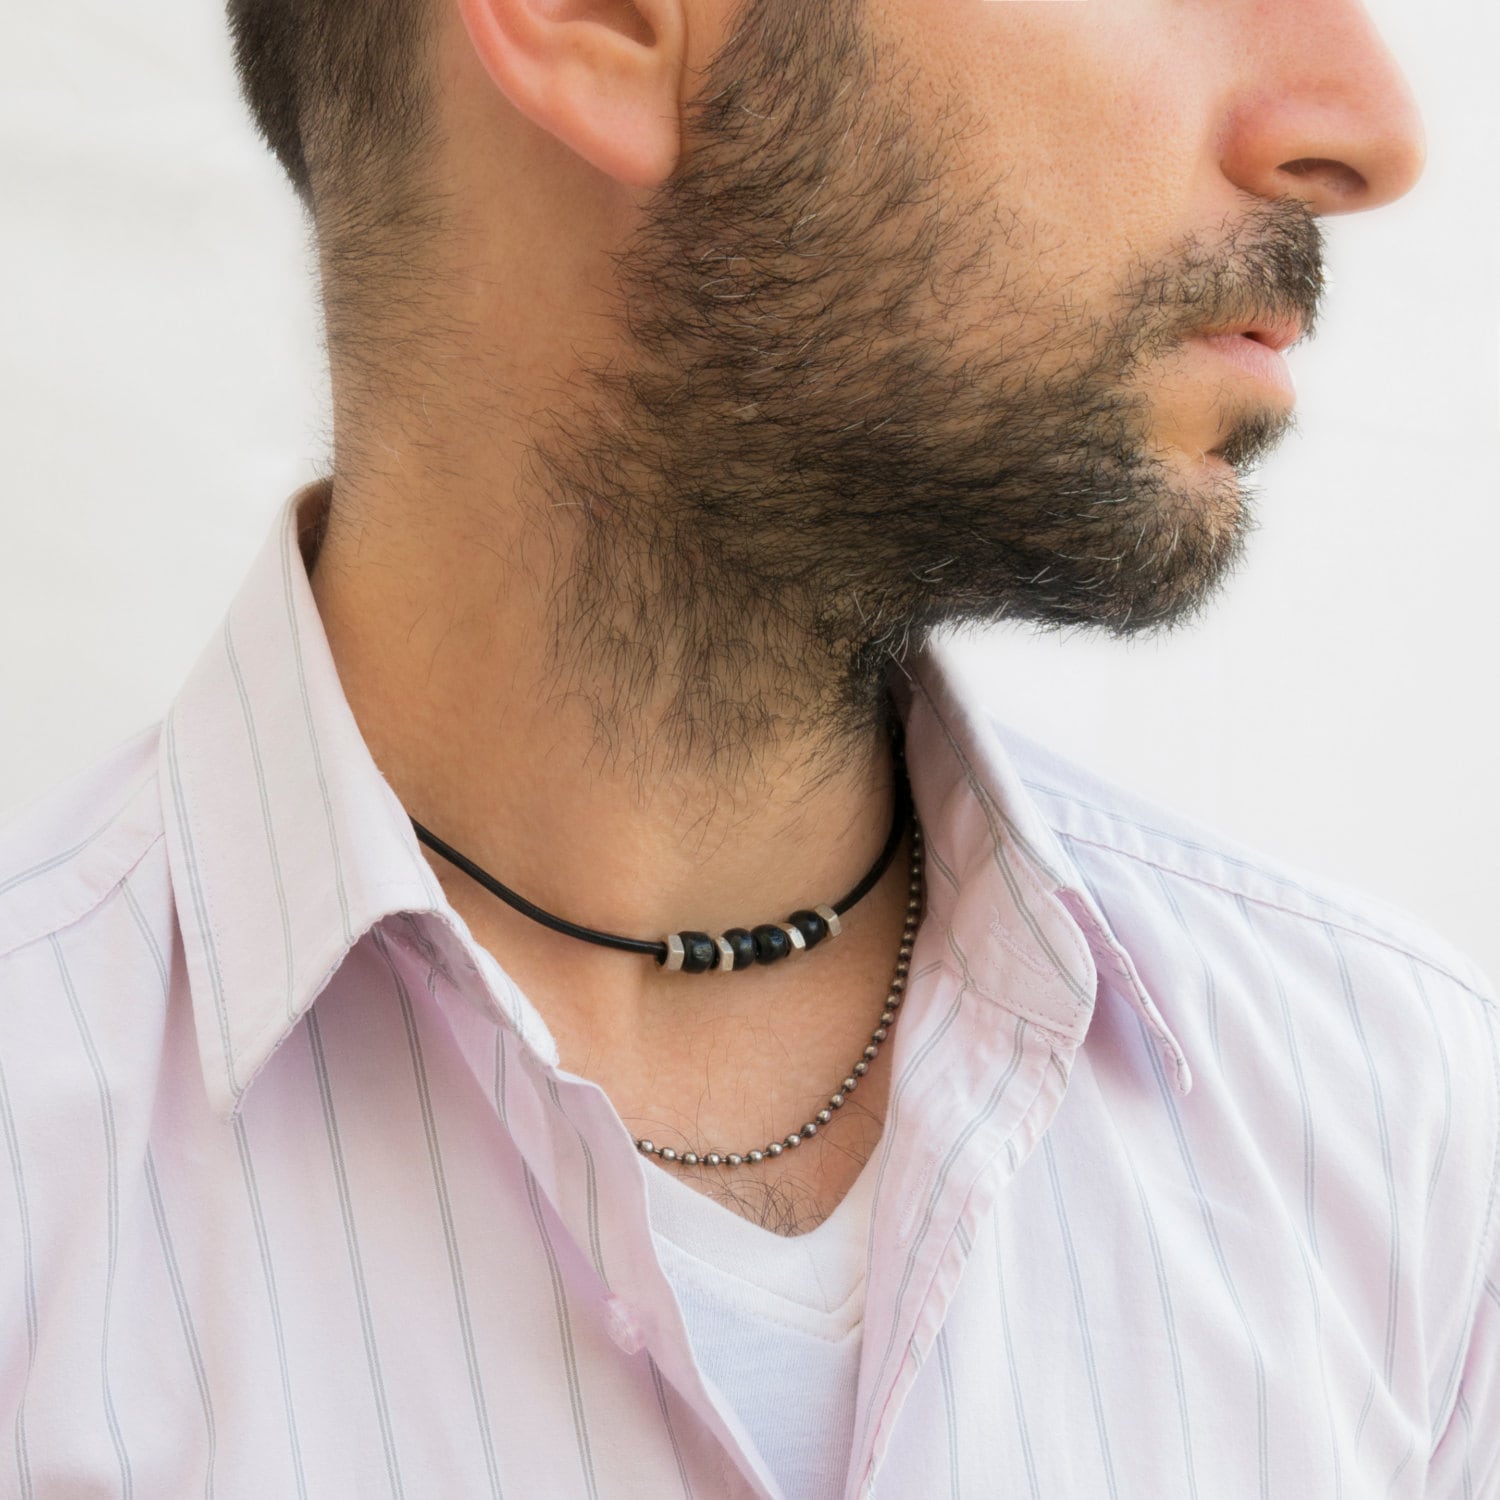 Men's Necklace Men's Choker Necklace Men's | Etsy